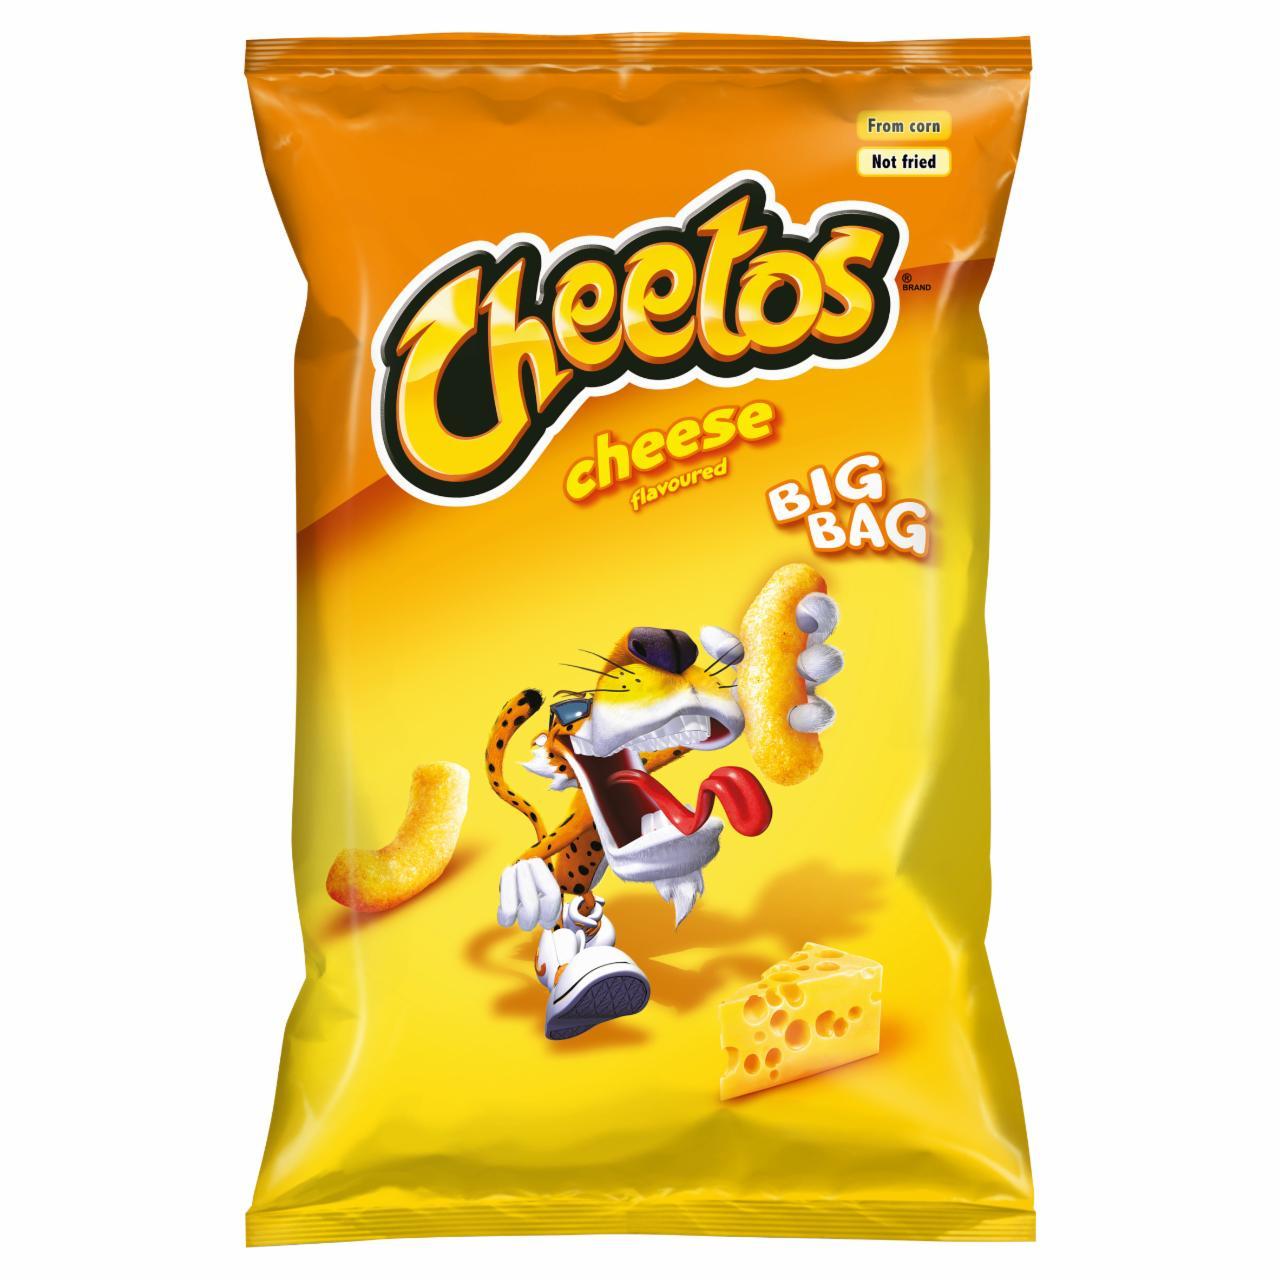 Képek - Cheetos sajtos ízesítésű kukoricasnack